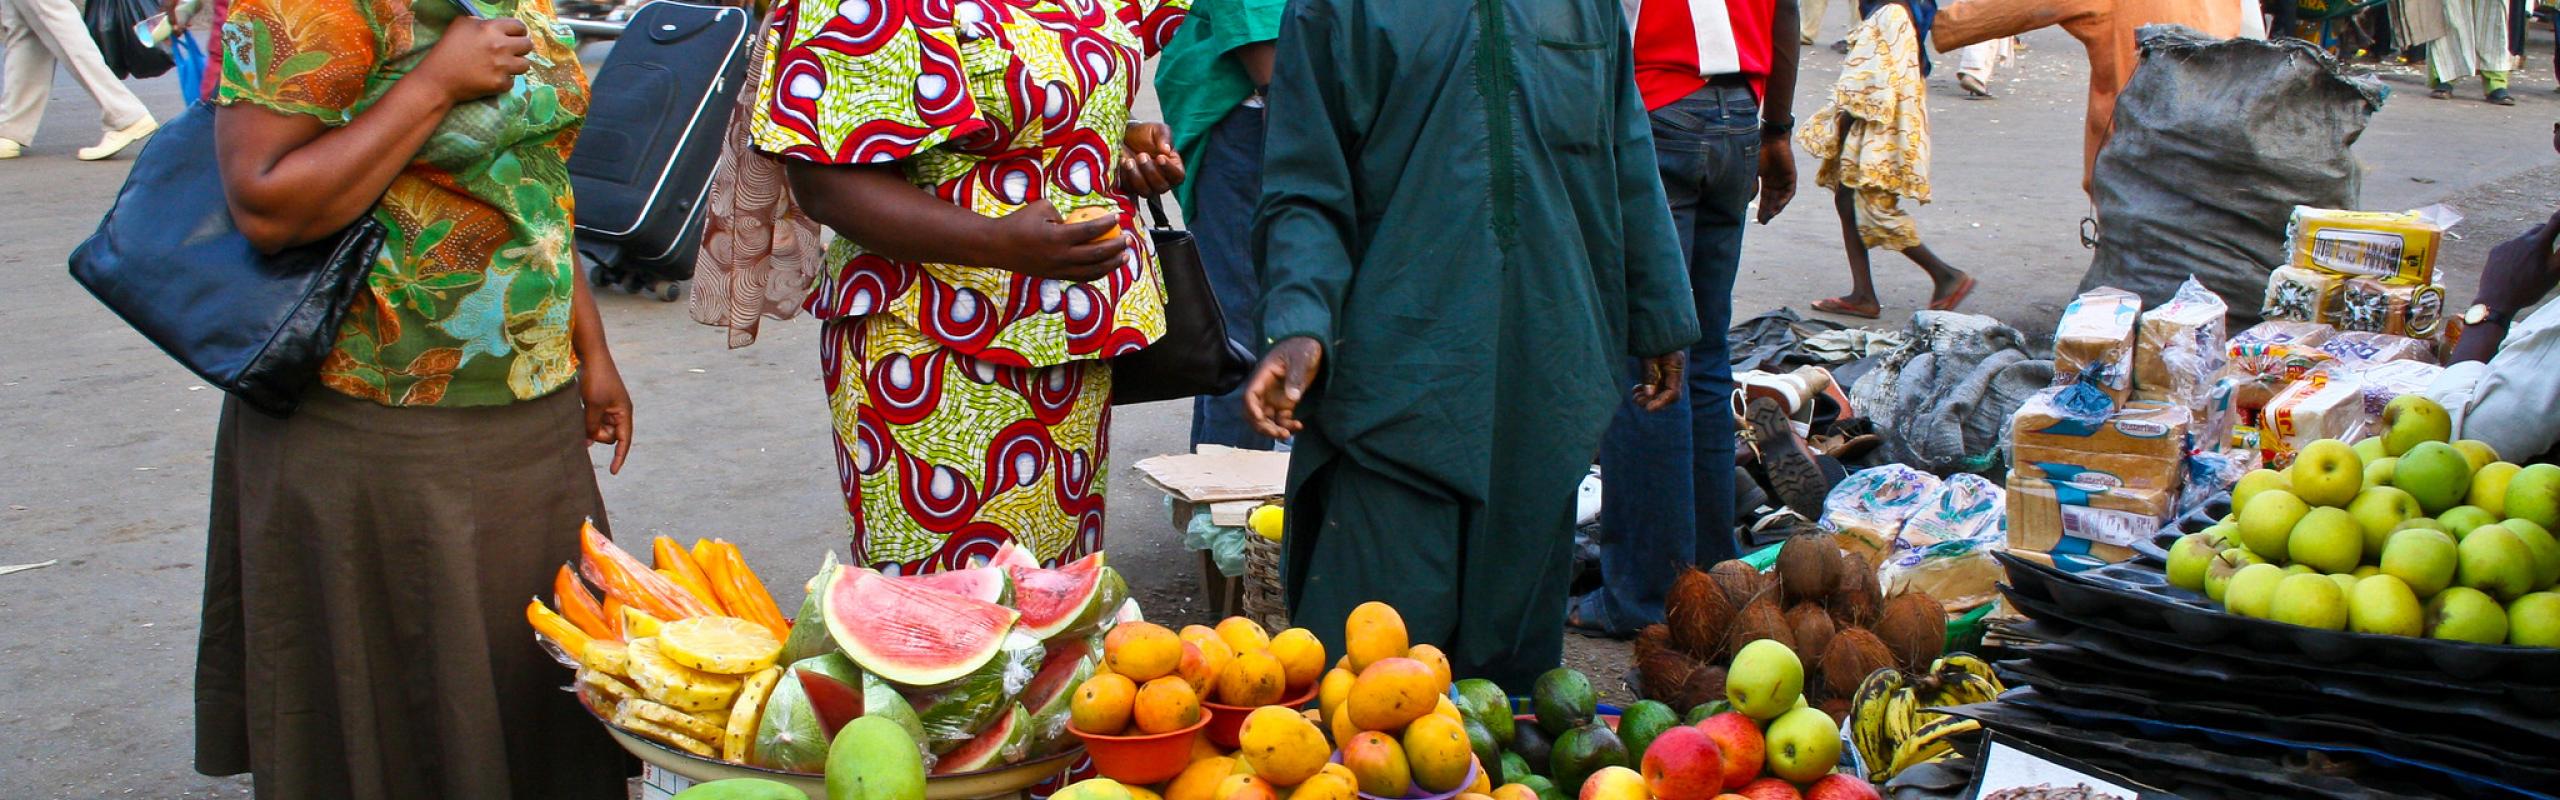  Les acheteurs se tiennent à l'étal dans le marché des fruits nigérian